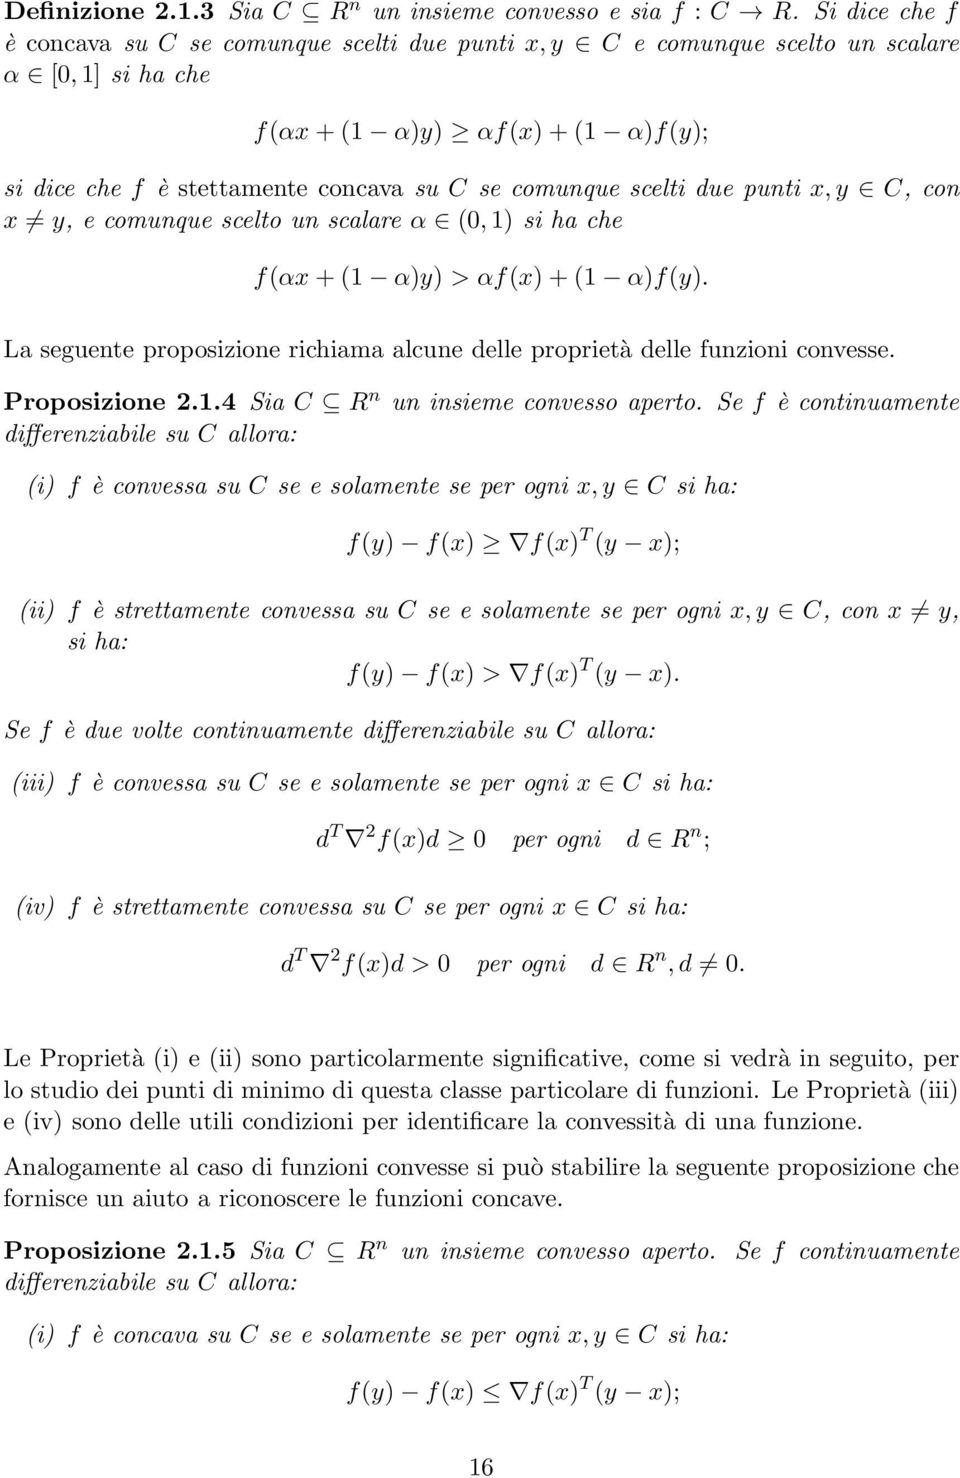 scelti due punti x,y C, con x y, e comunque scelto un scalare α (0,1) si ha che f(αx+(1 α)y) > αf(x)+(1 α)f(y). La seguente proposizione richiama alcune delle proprietà delle funzioni convesse.